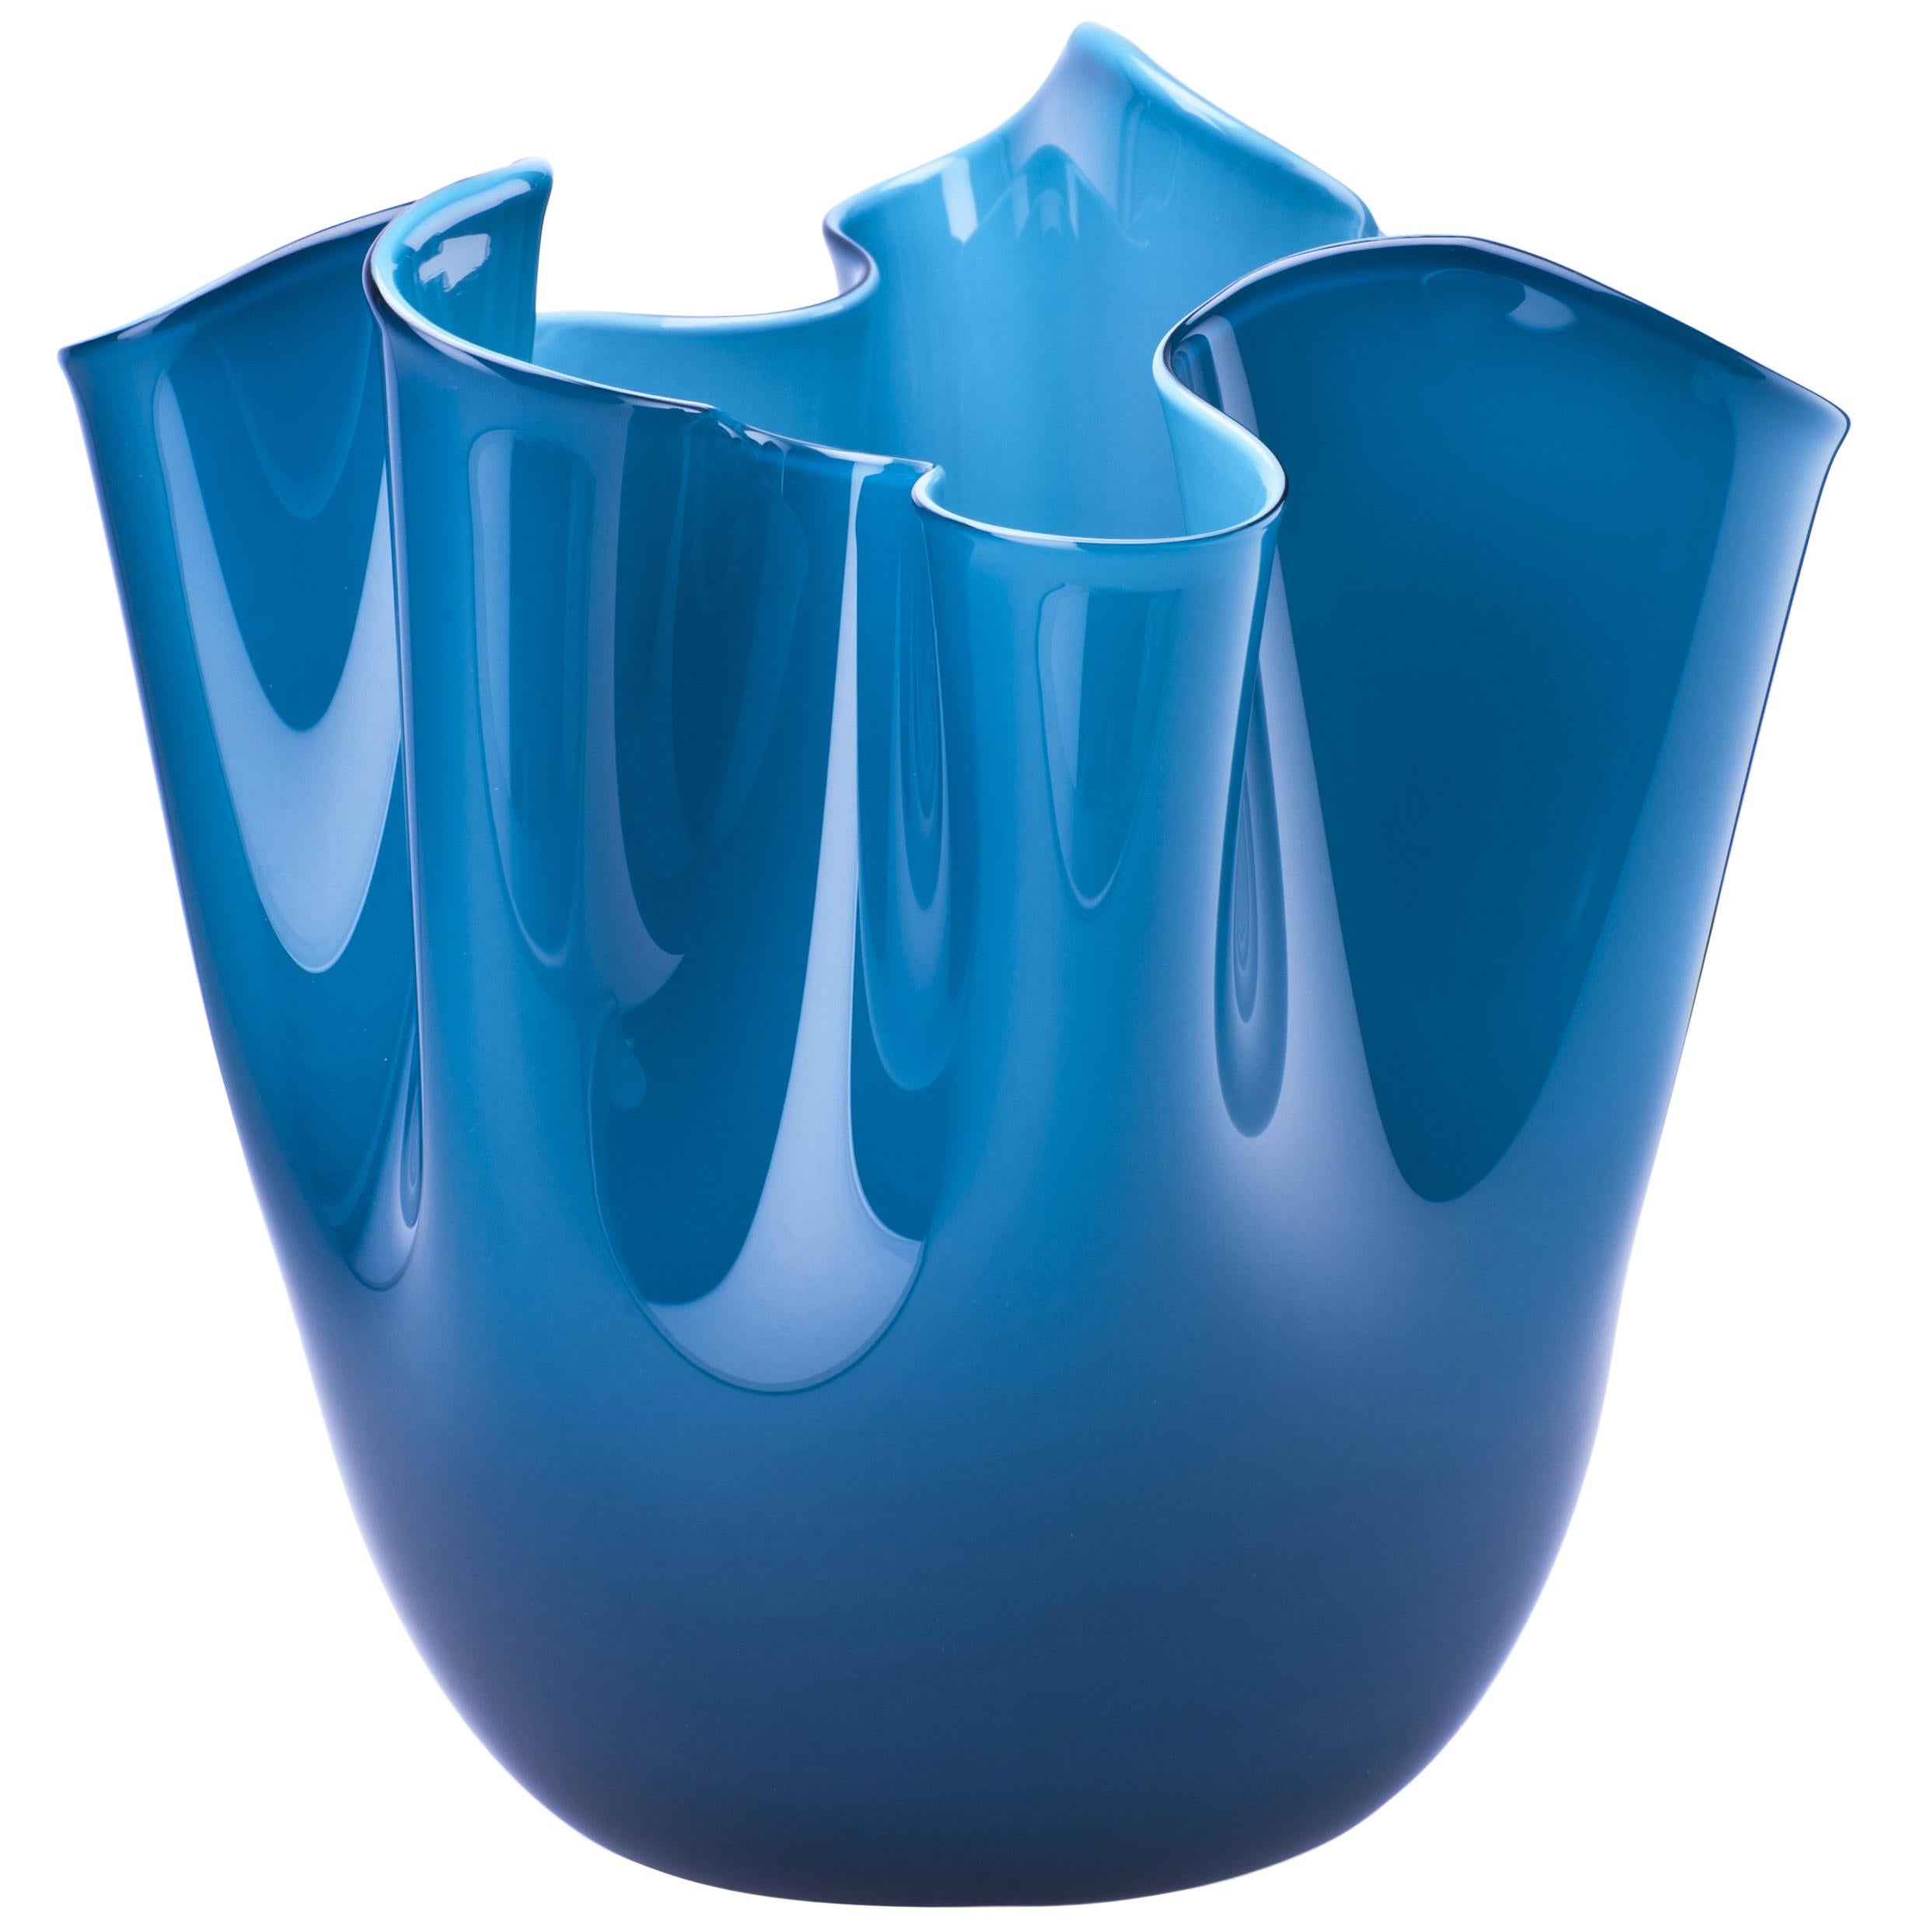 Fazzoletto Glass Vase in Horizon & Aquamarine by Fulvio Bianconi & Paolo Venini